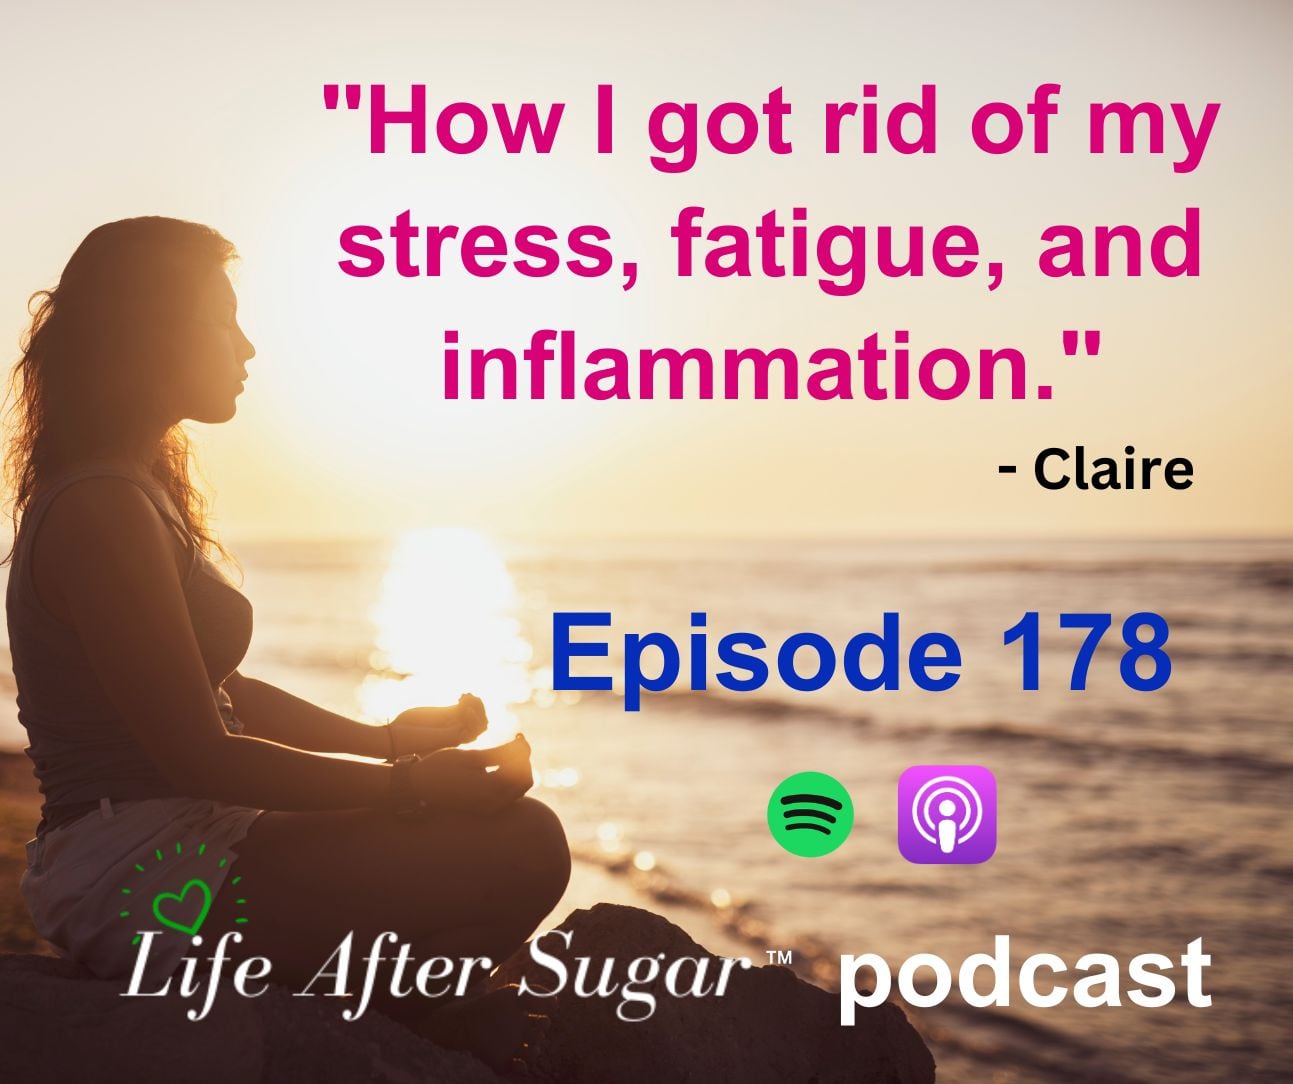 Life After Sugar Podcast Episode 178